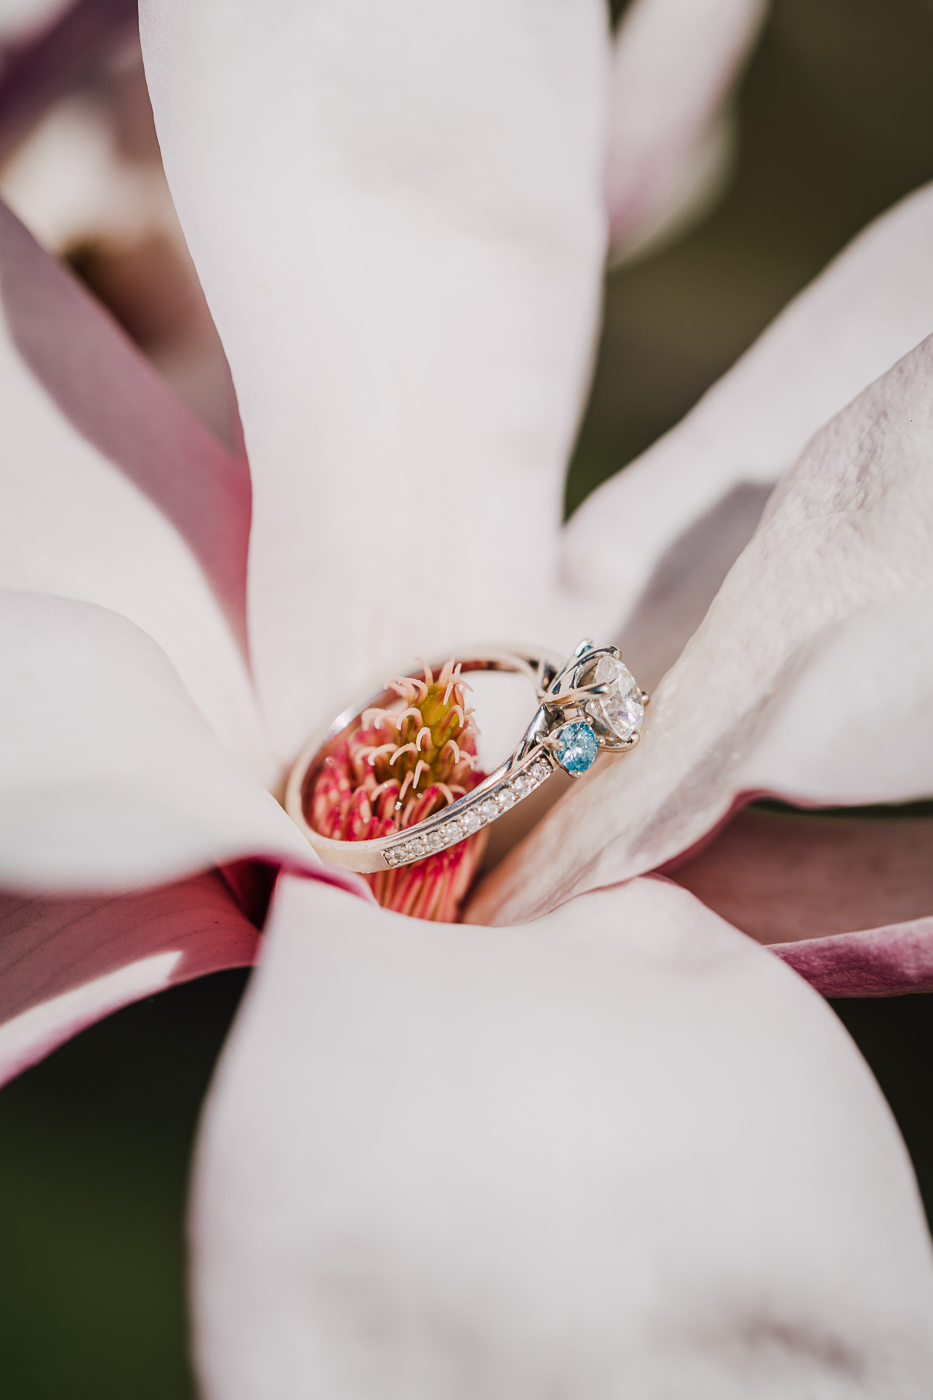  engagement ring nestled inside a cherry blossom flower 